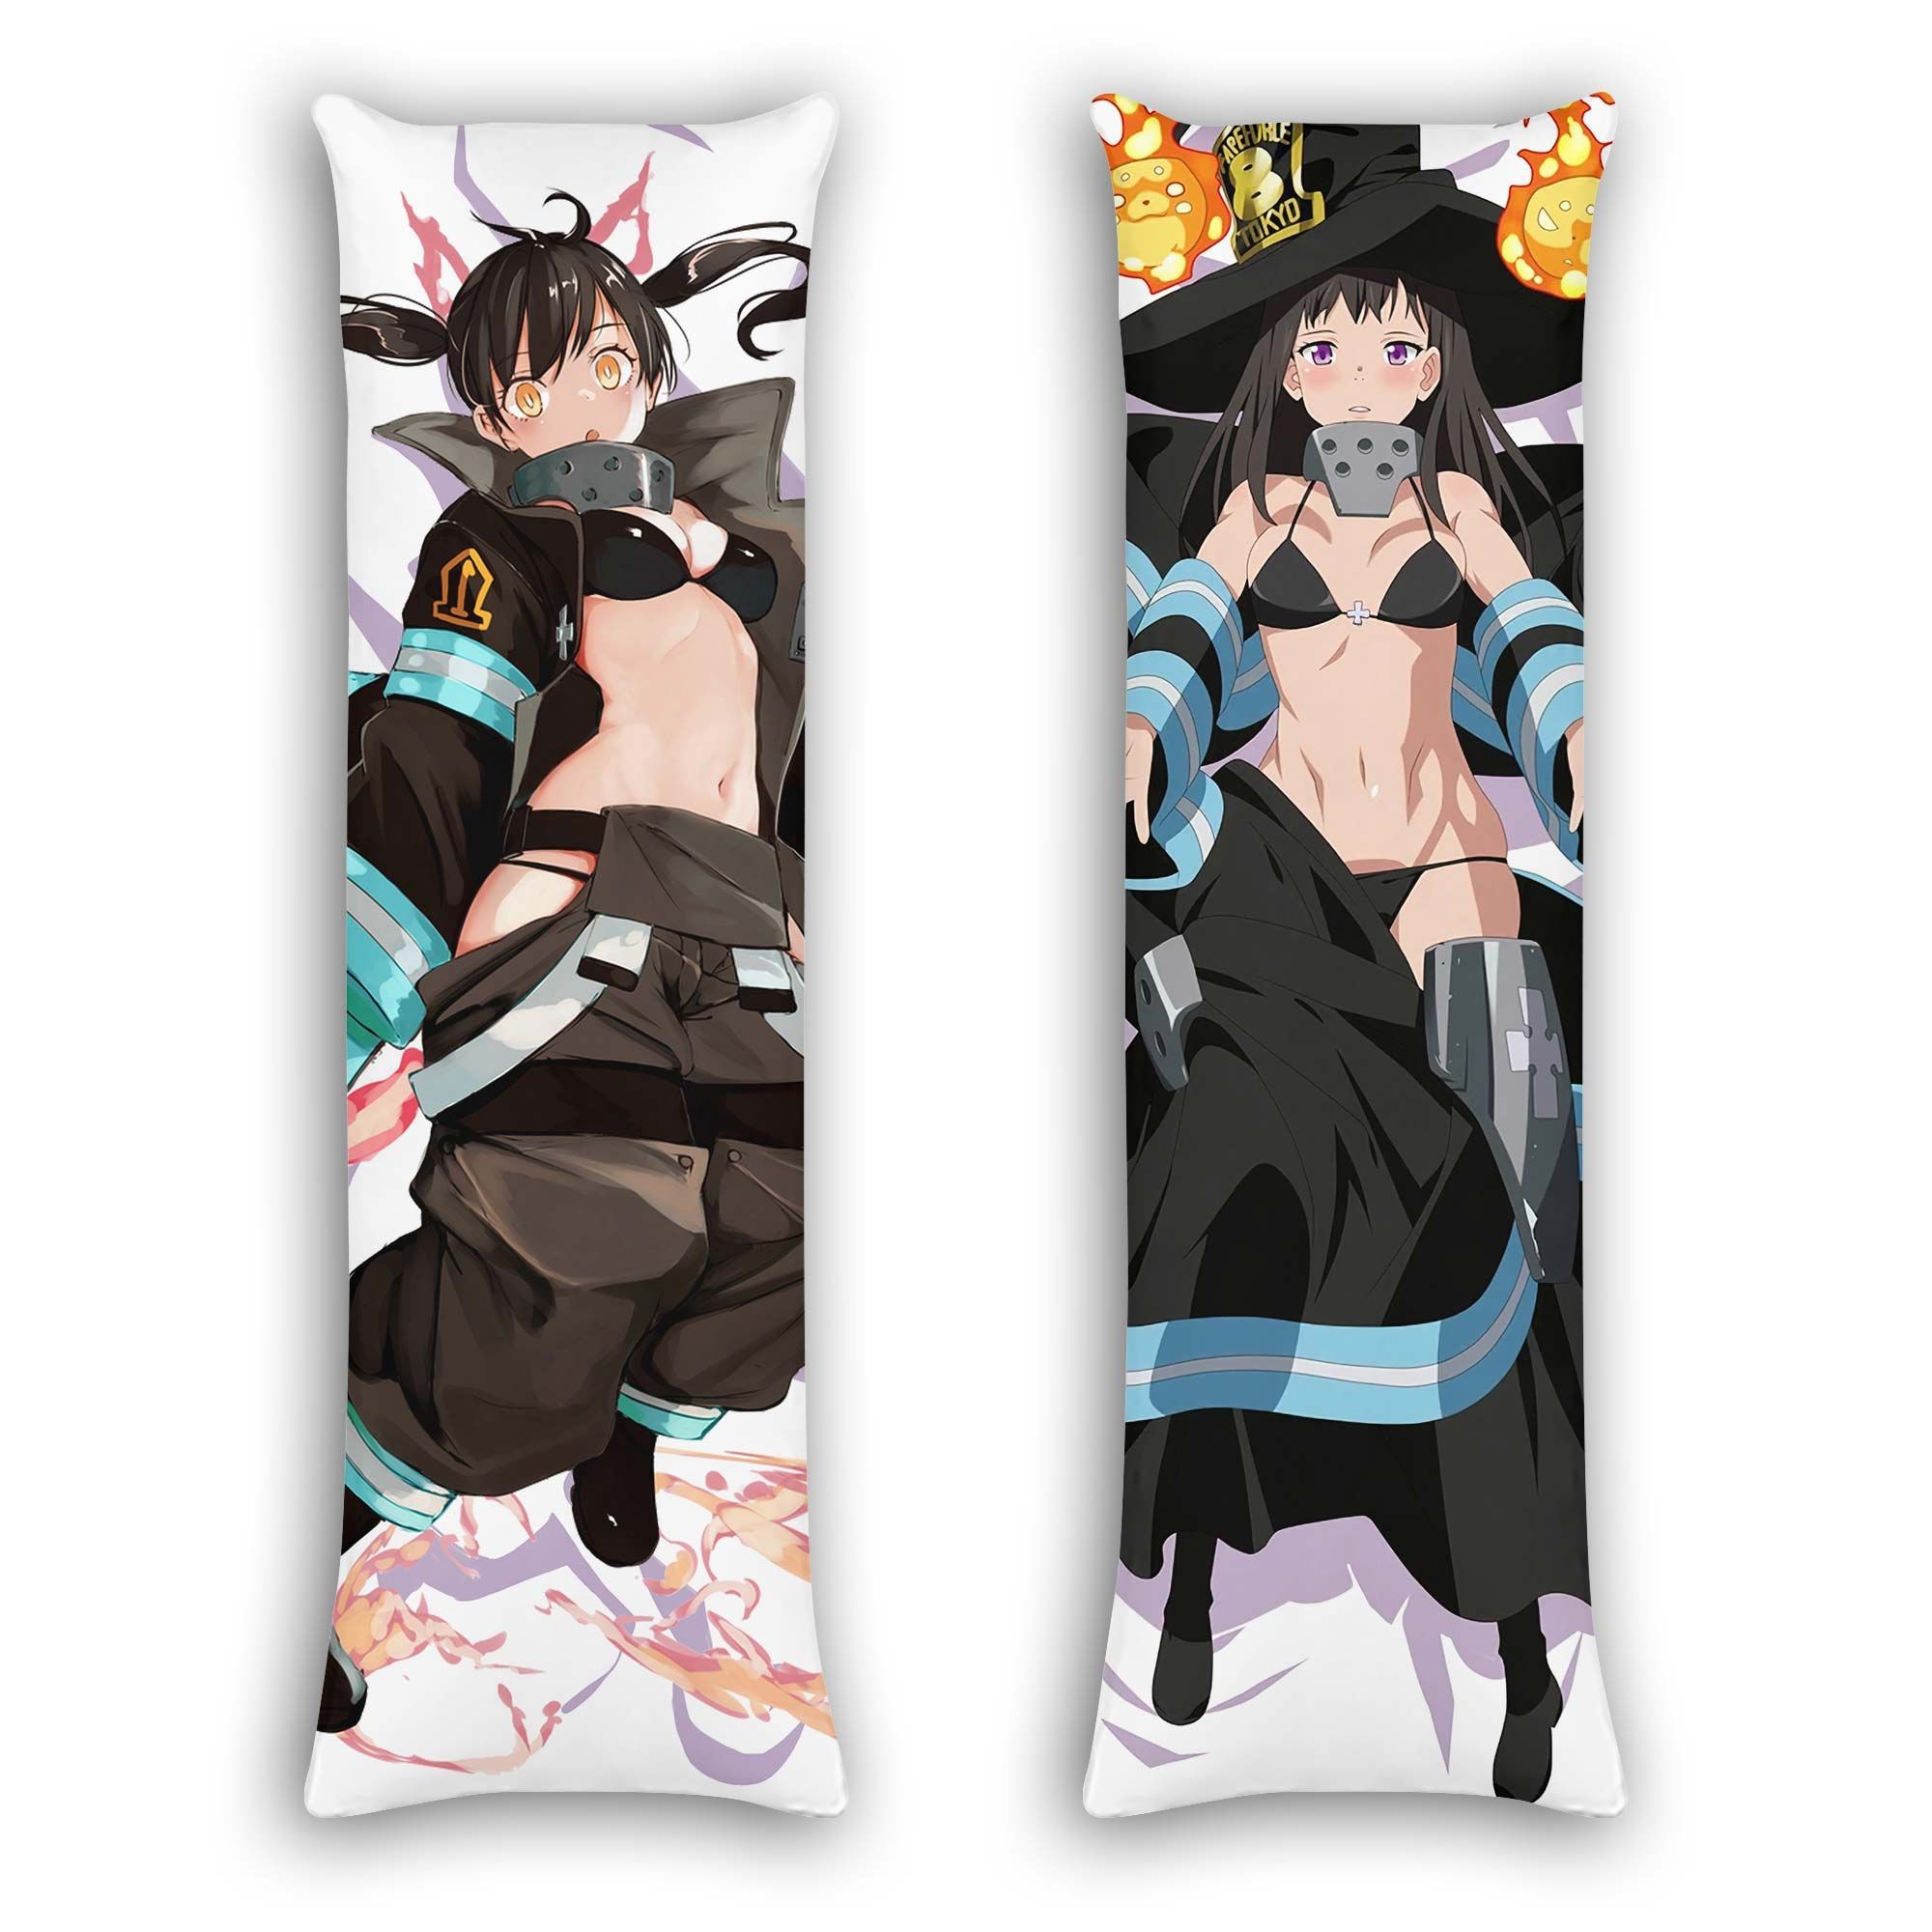 Tamaki Kotatsu Body Pillow Cover Anime Gifts Idea For Otaku Girl Official Merch GO0110